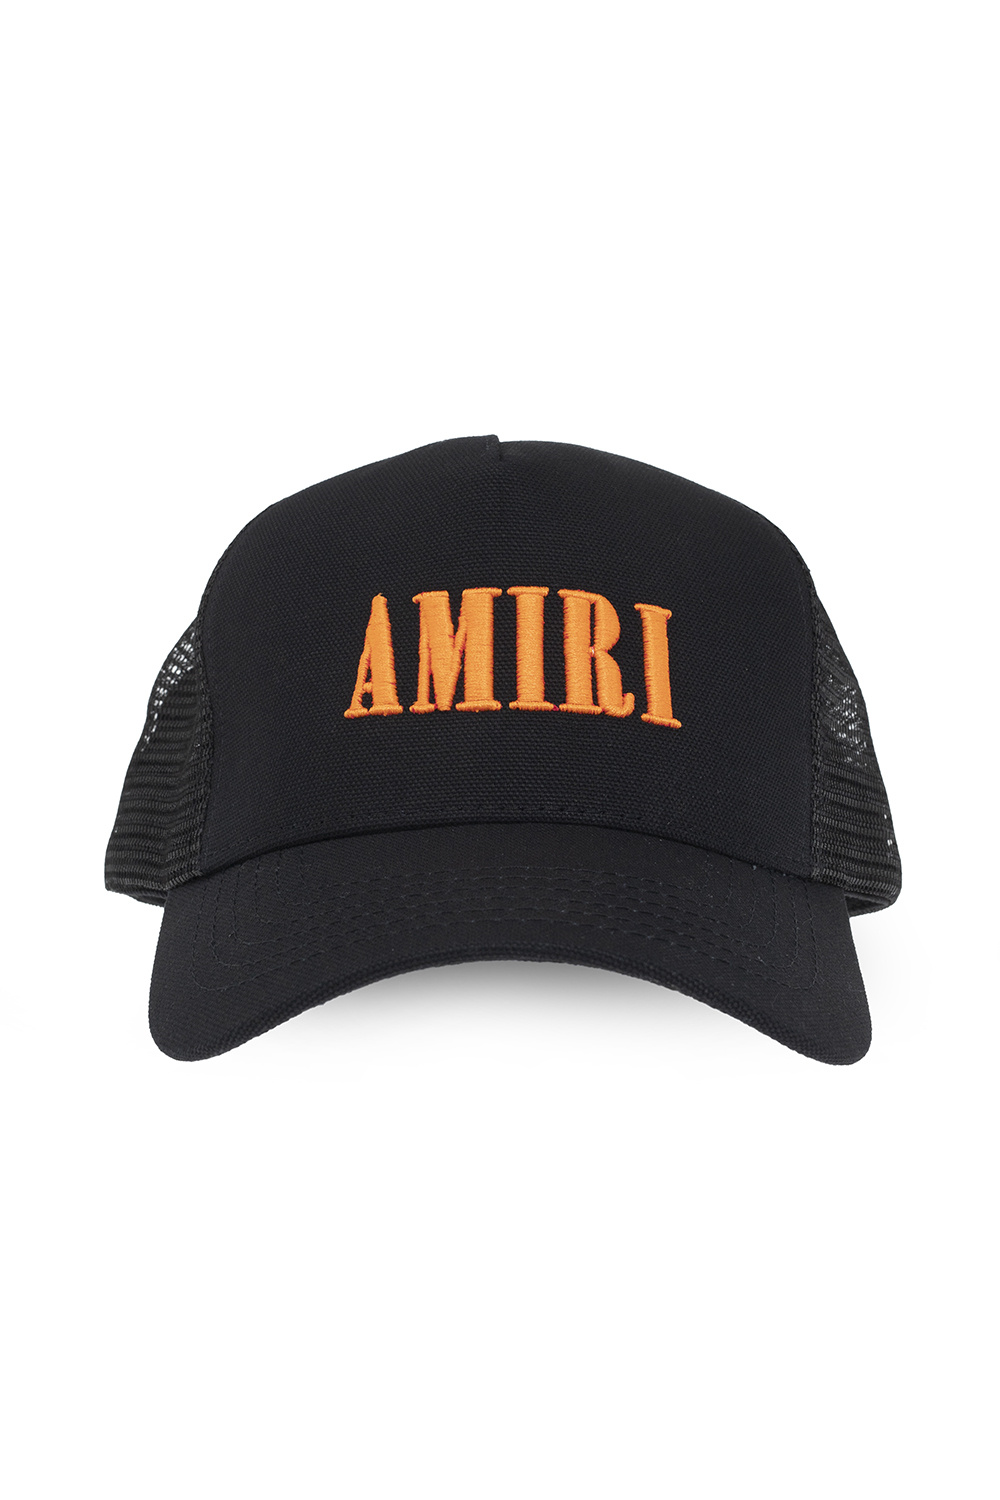 Amiri Trucker hat